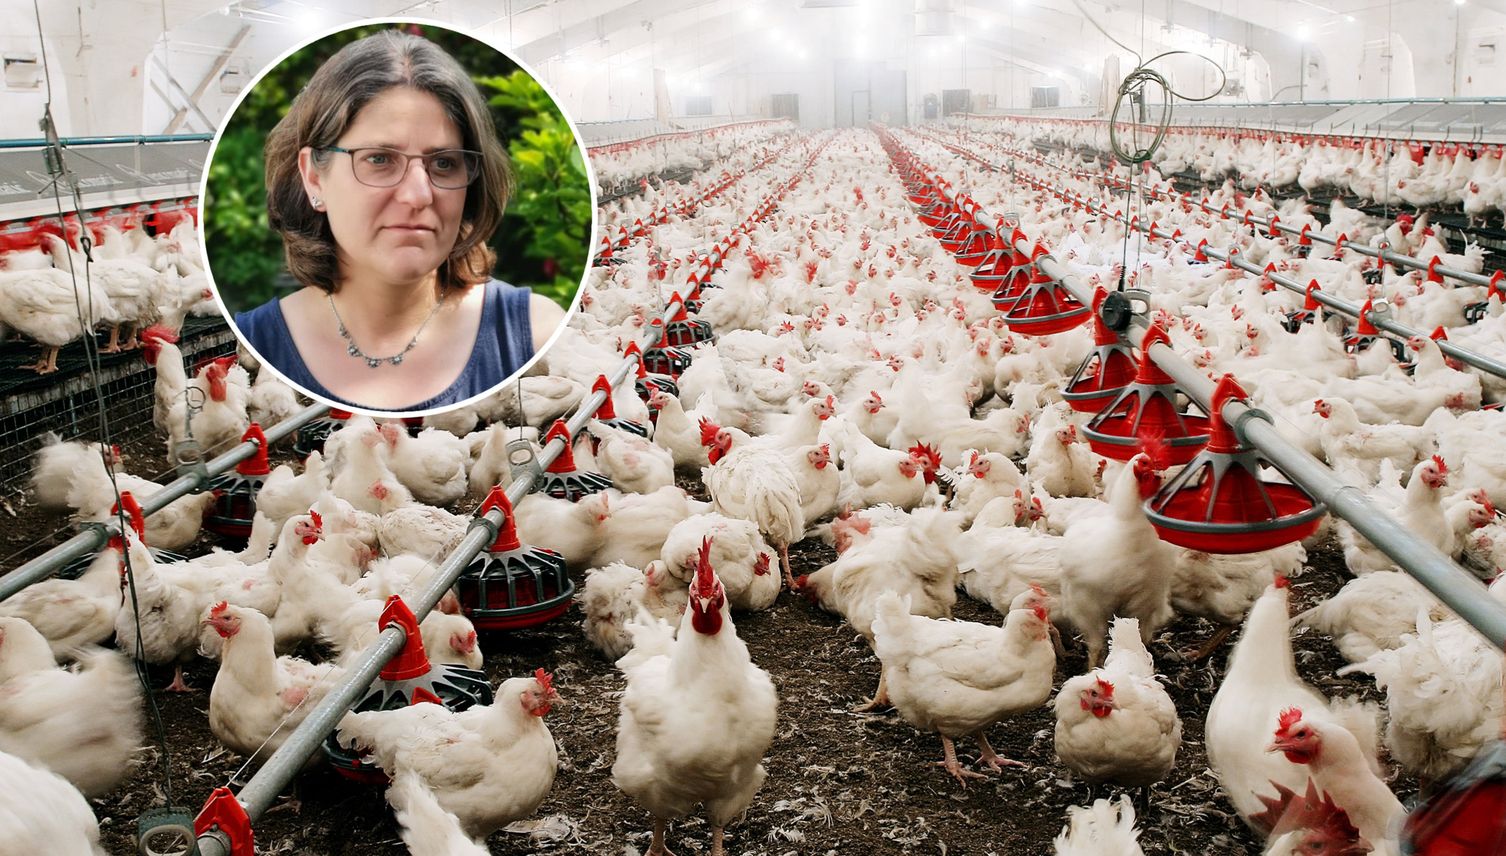 Dicke Luft in Adligenswil: Anwohner wehren sich gegen Hühner-Mastbetrieb